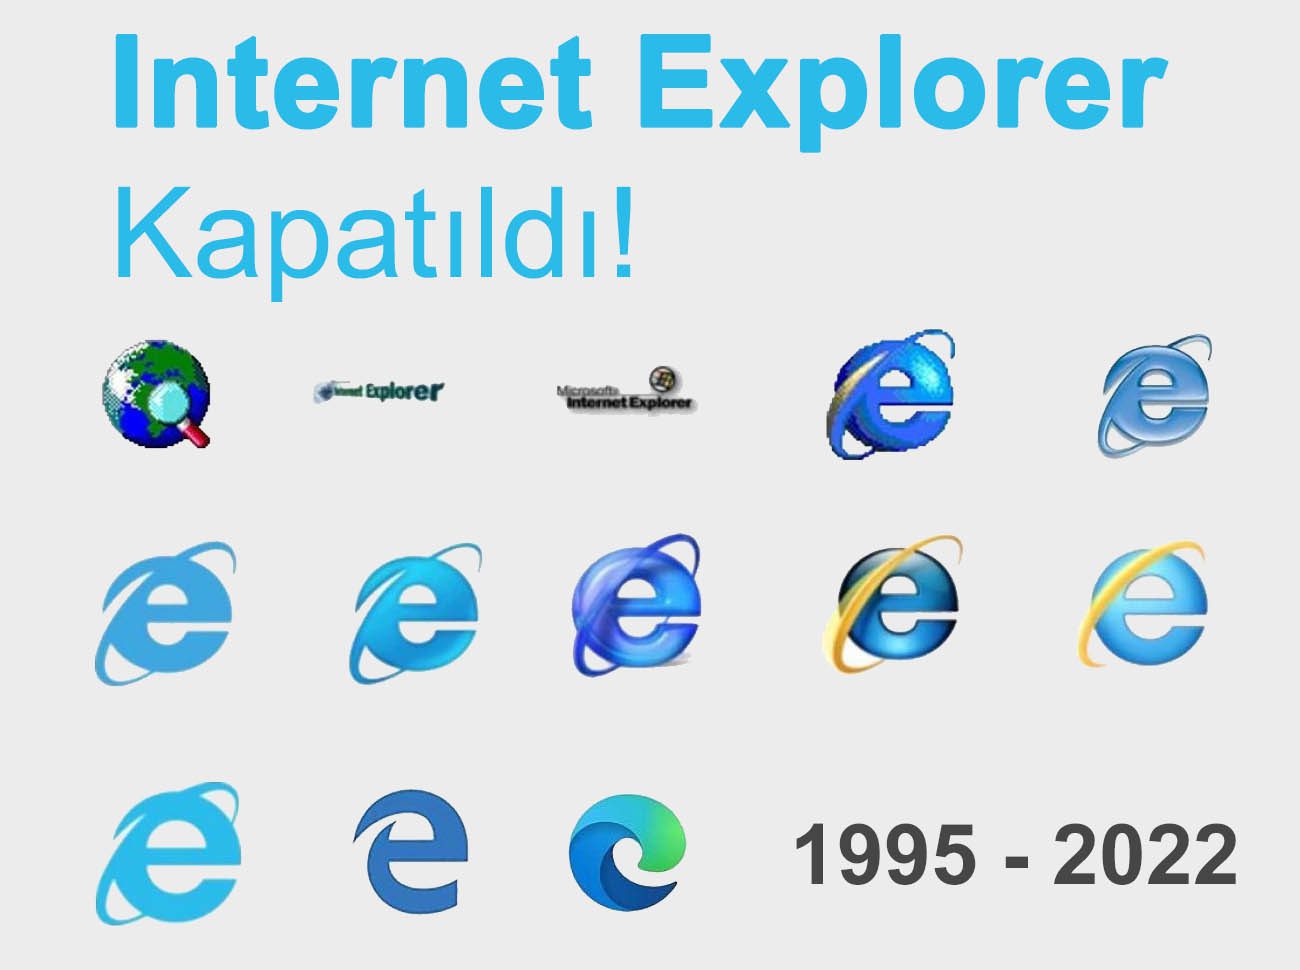 Internet Explorer Kapatıldı! Peki Şimdi Ne Olacak?